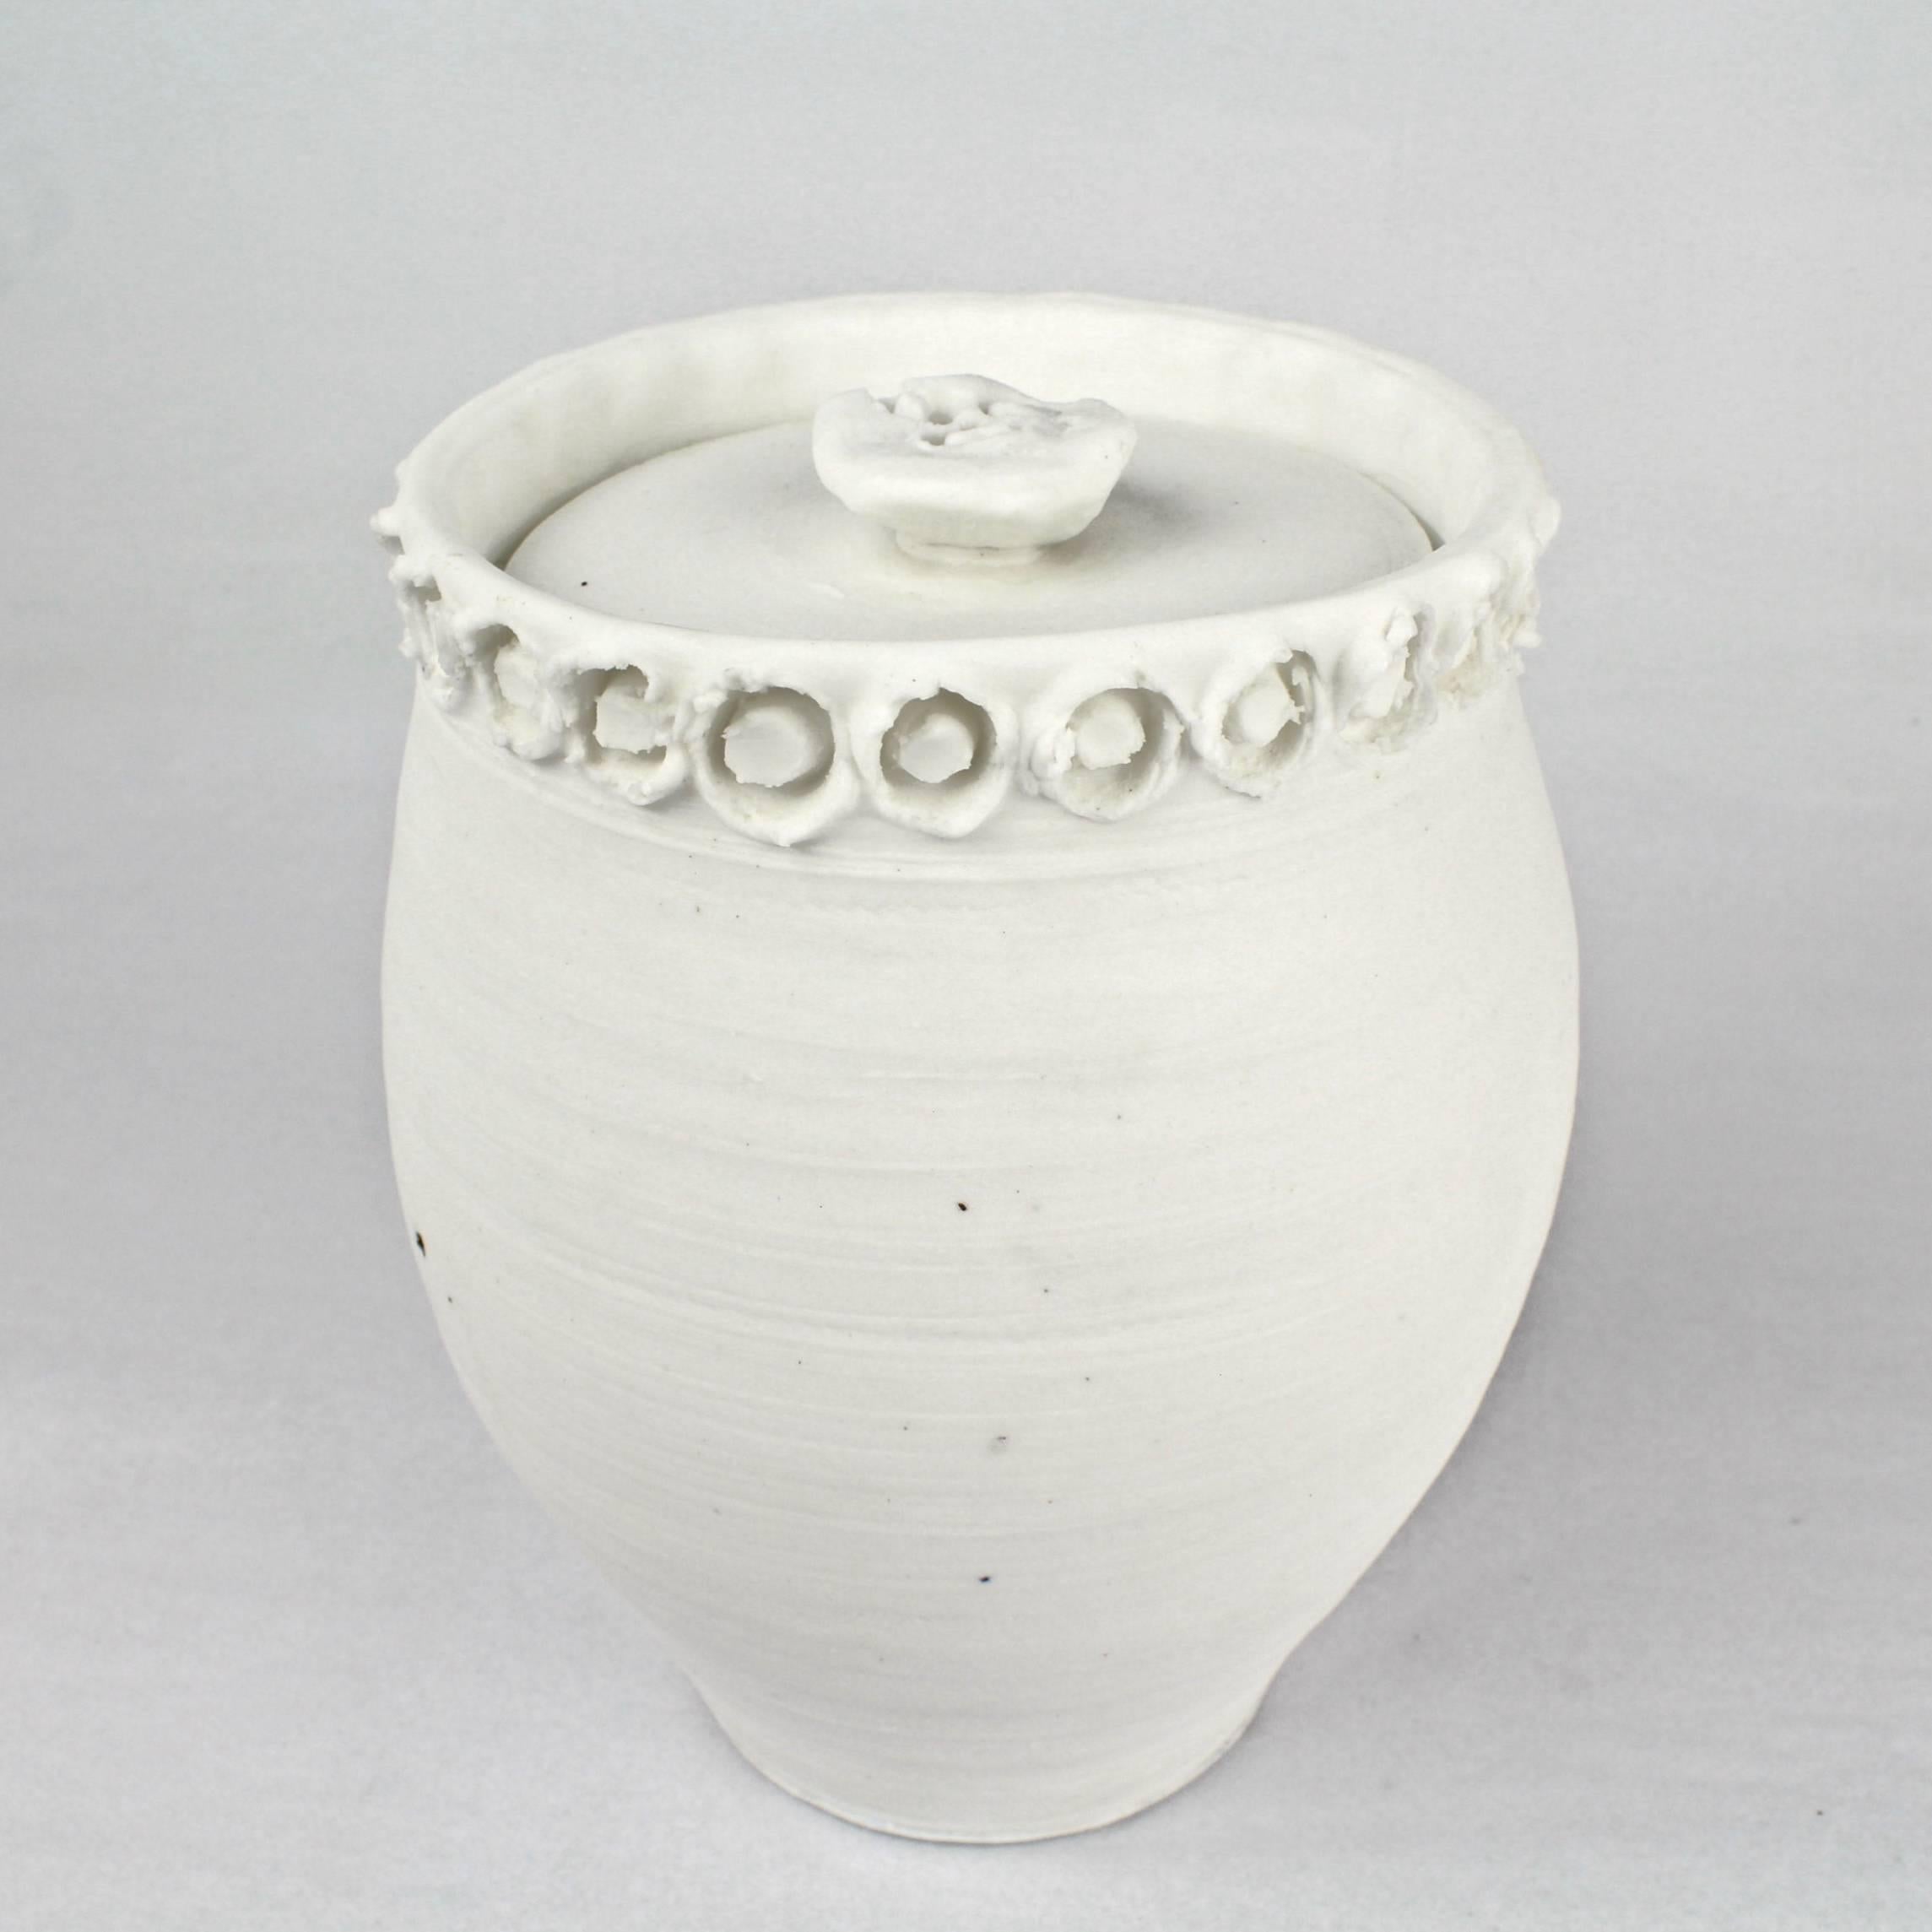 Large Rare Light Gatherer Covered Porcelain Jar by Rudolf 